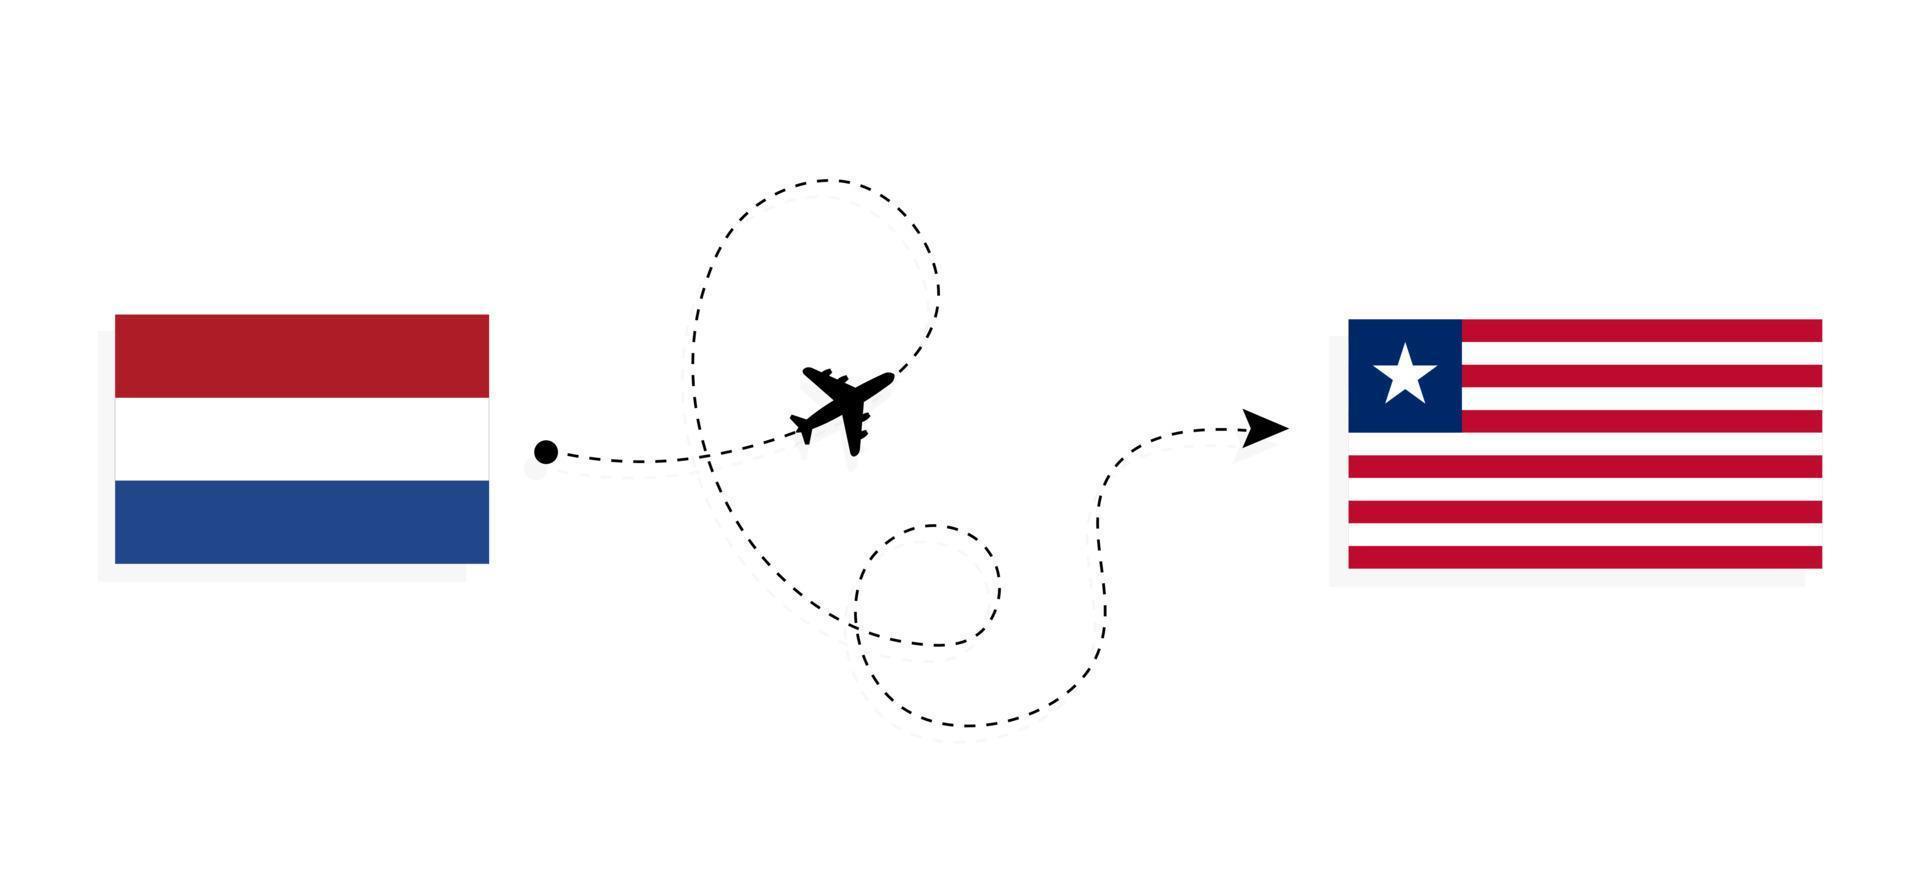 flyg och resor från Nederländerna till Liberia med passagerarflygplan vektor